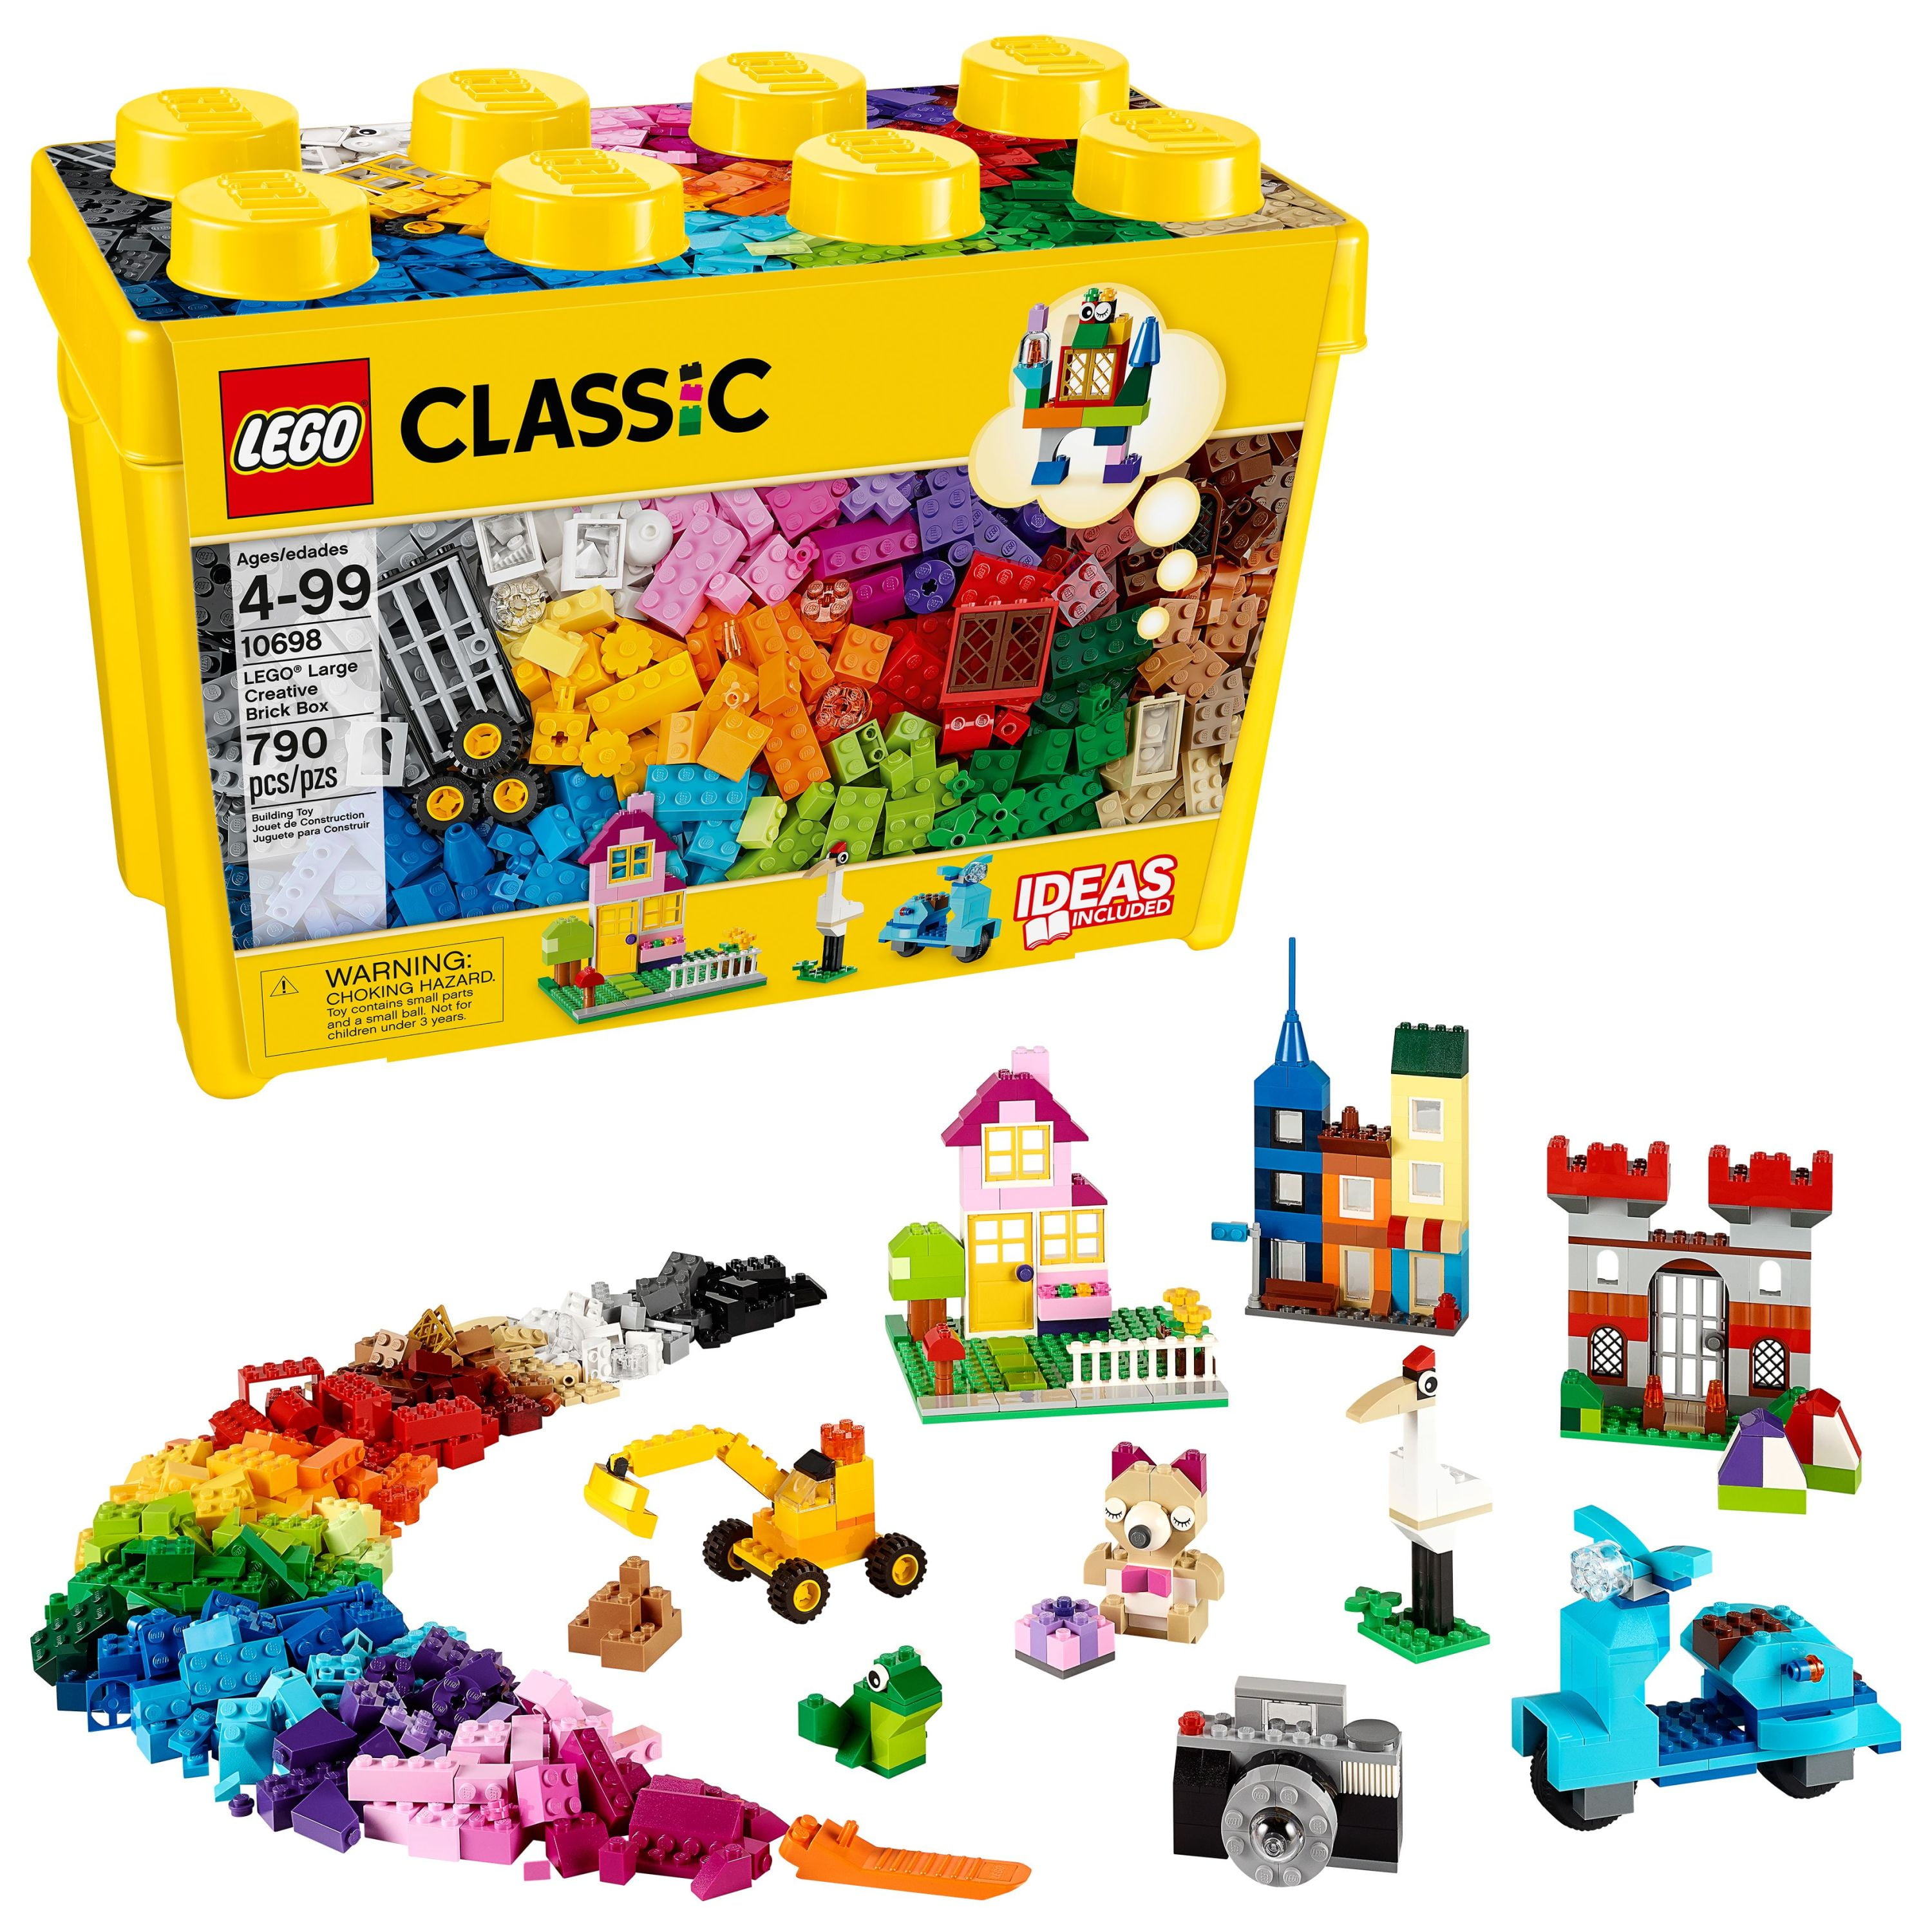 Afhankelijk Betrouwbaar Uitdrukkelijk LEGO Classic Large Creative Brick Box 10698 Building Toy Set (790 pcs) -  Walmart.com